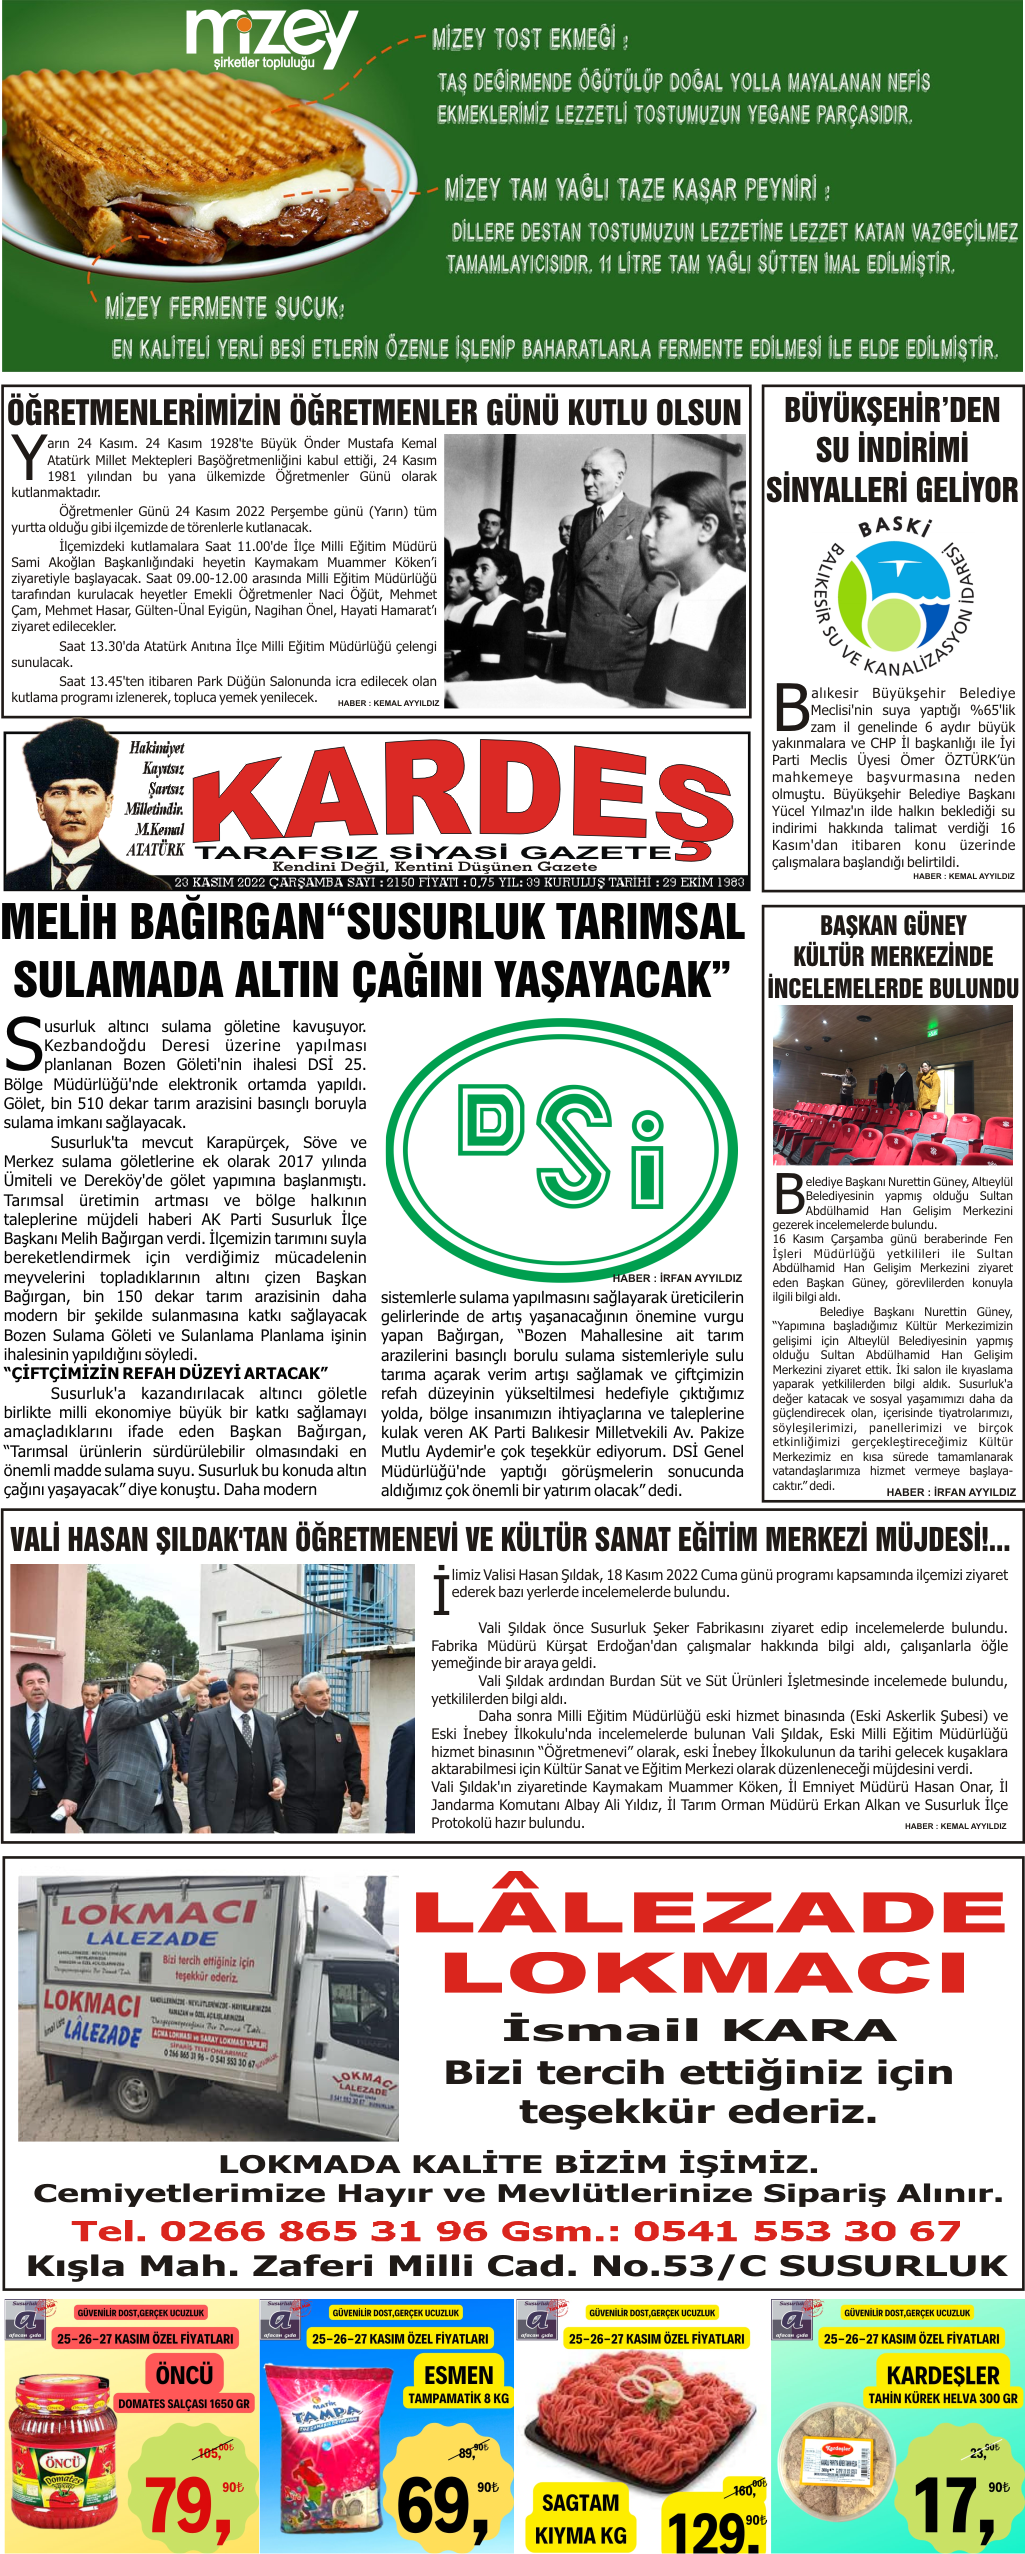 23.11.2022 Tarihli Kardeş Gazetesi